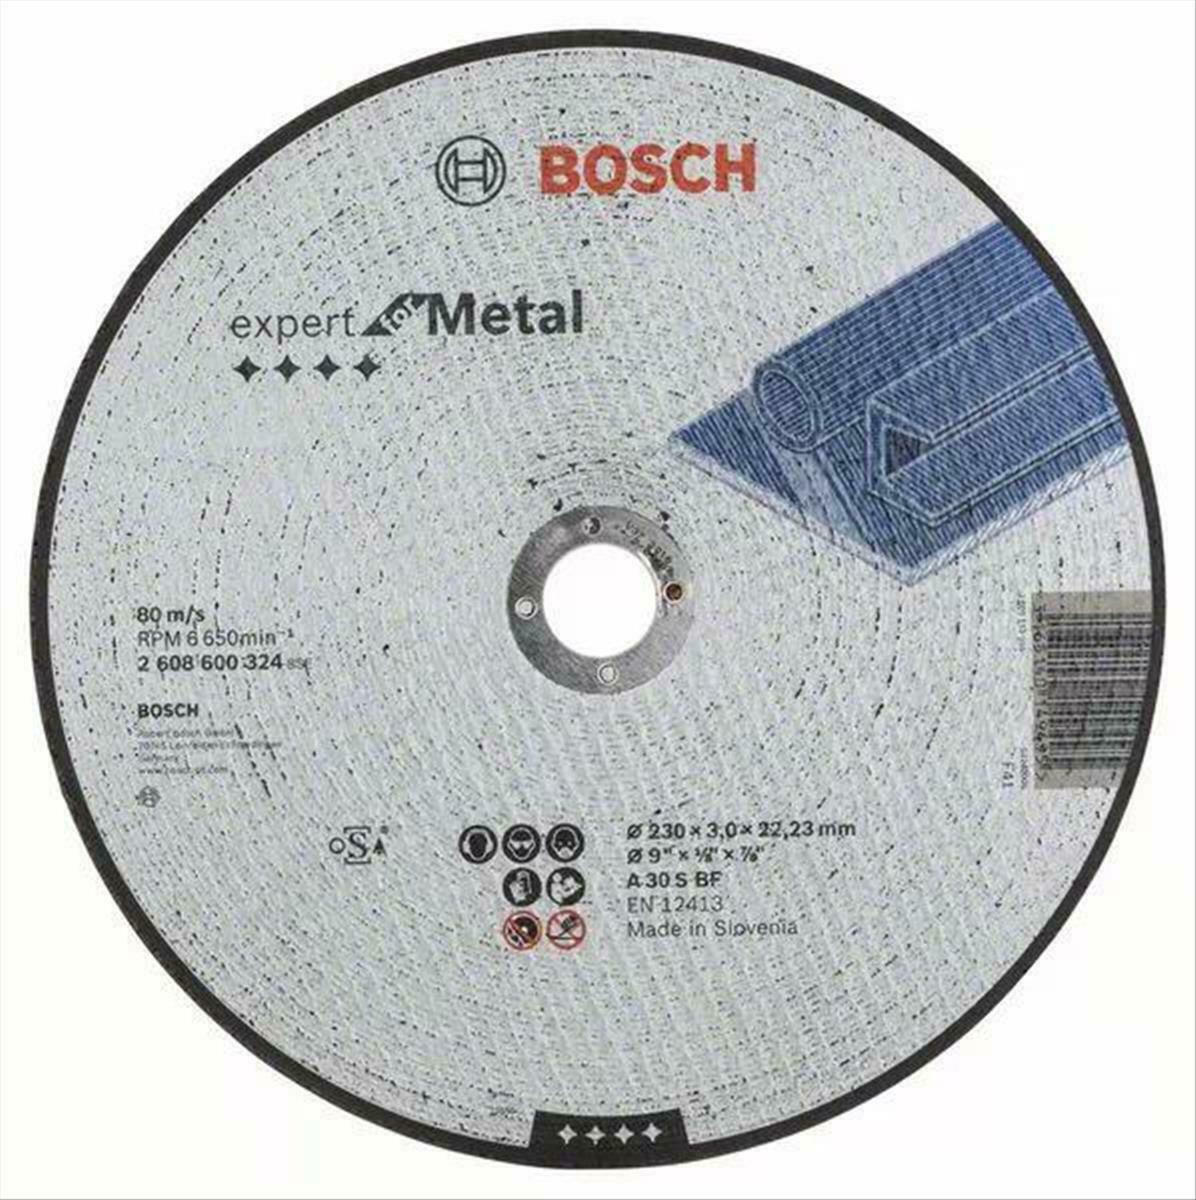 20210210144123_bosch_diskos_kopis_metallou_expert_for_metal_230mm_2608600324_1tmch.jpeg